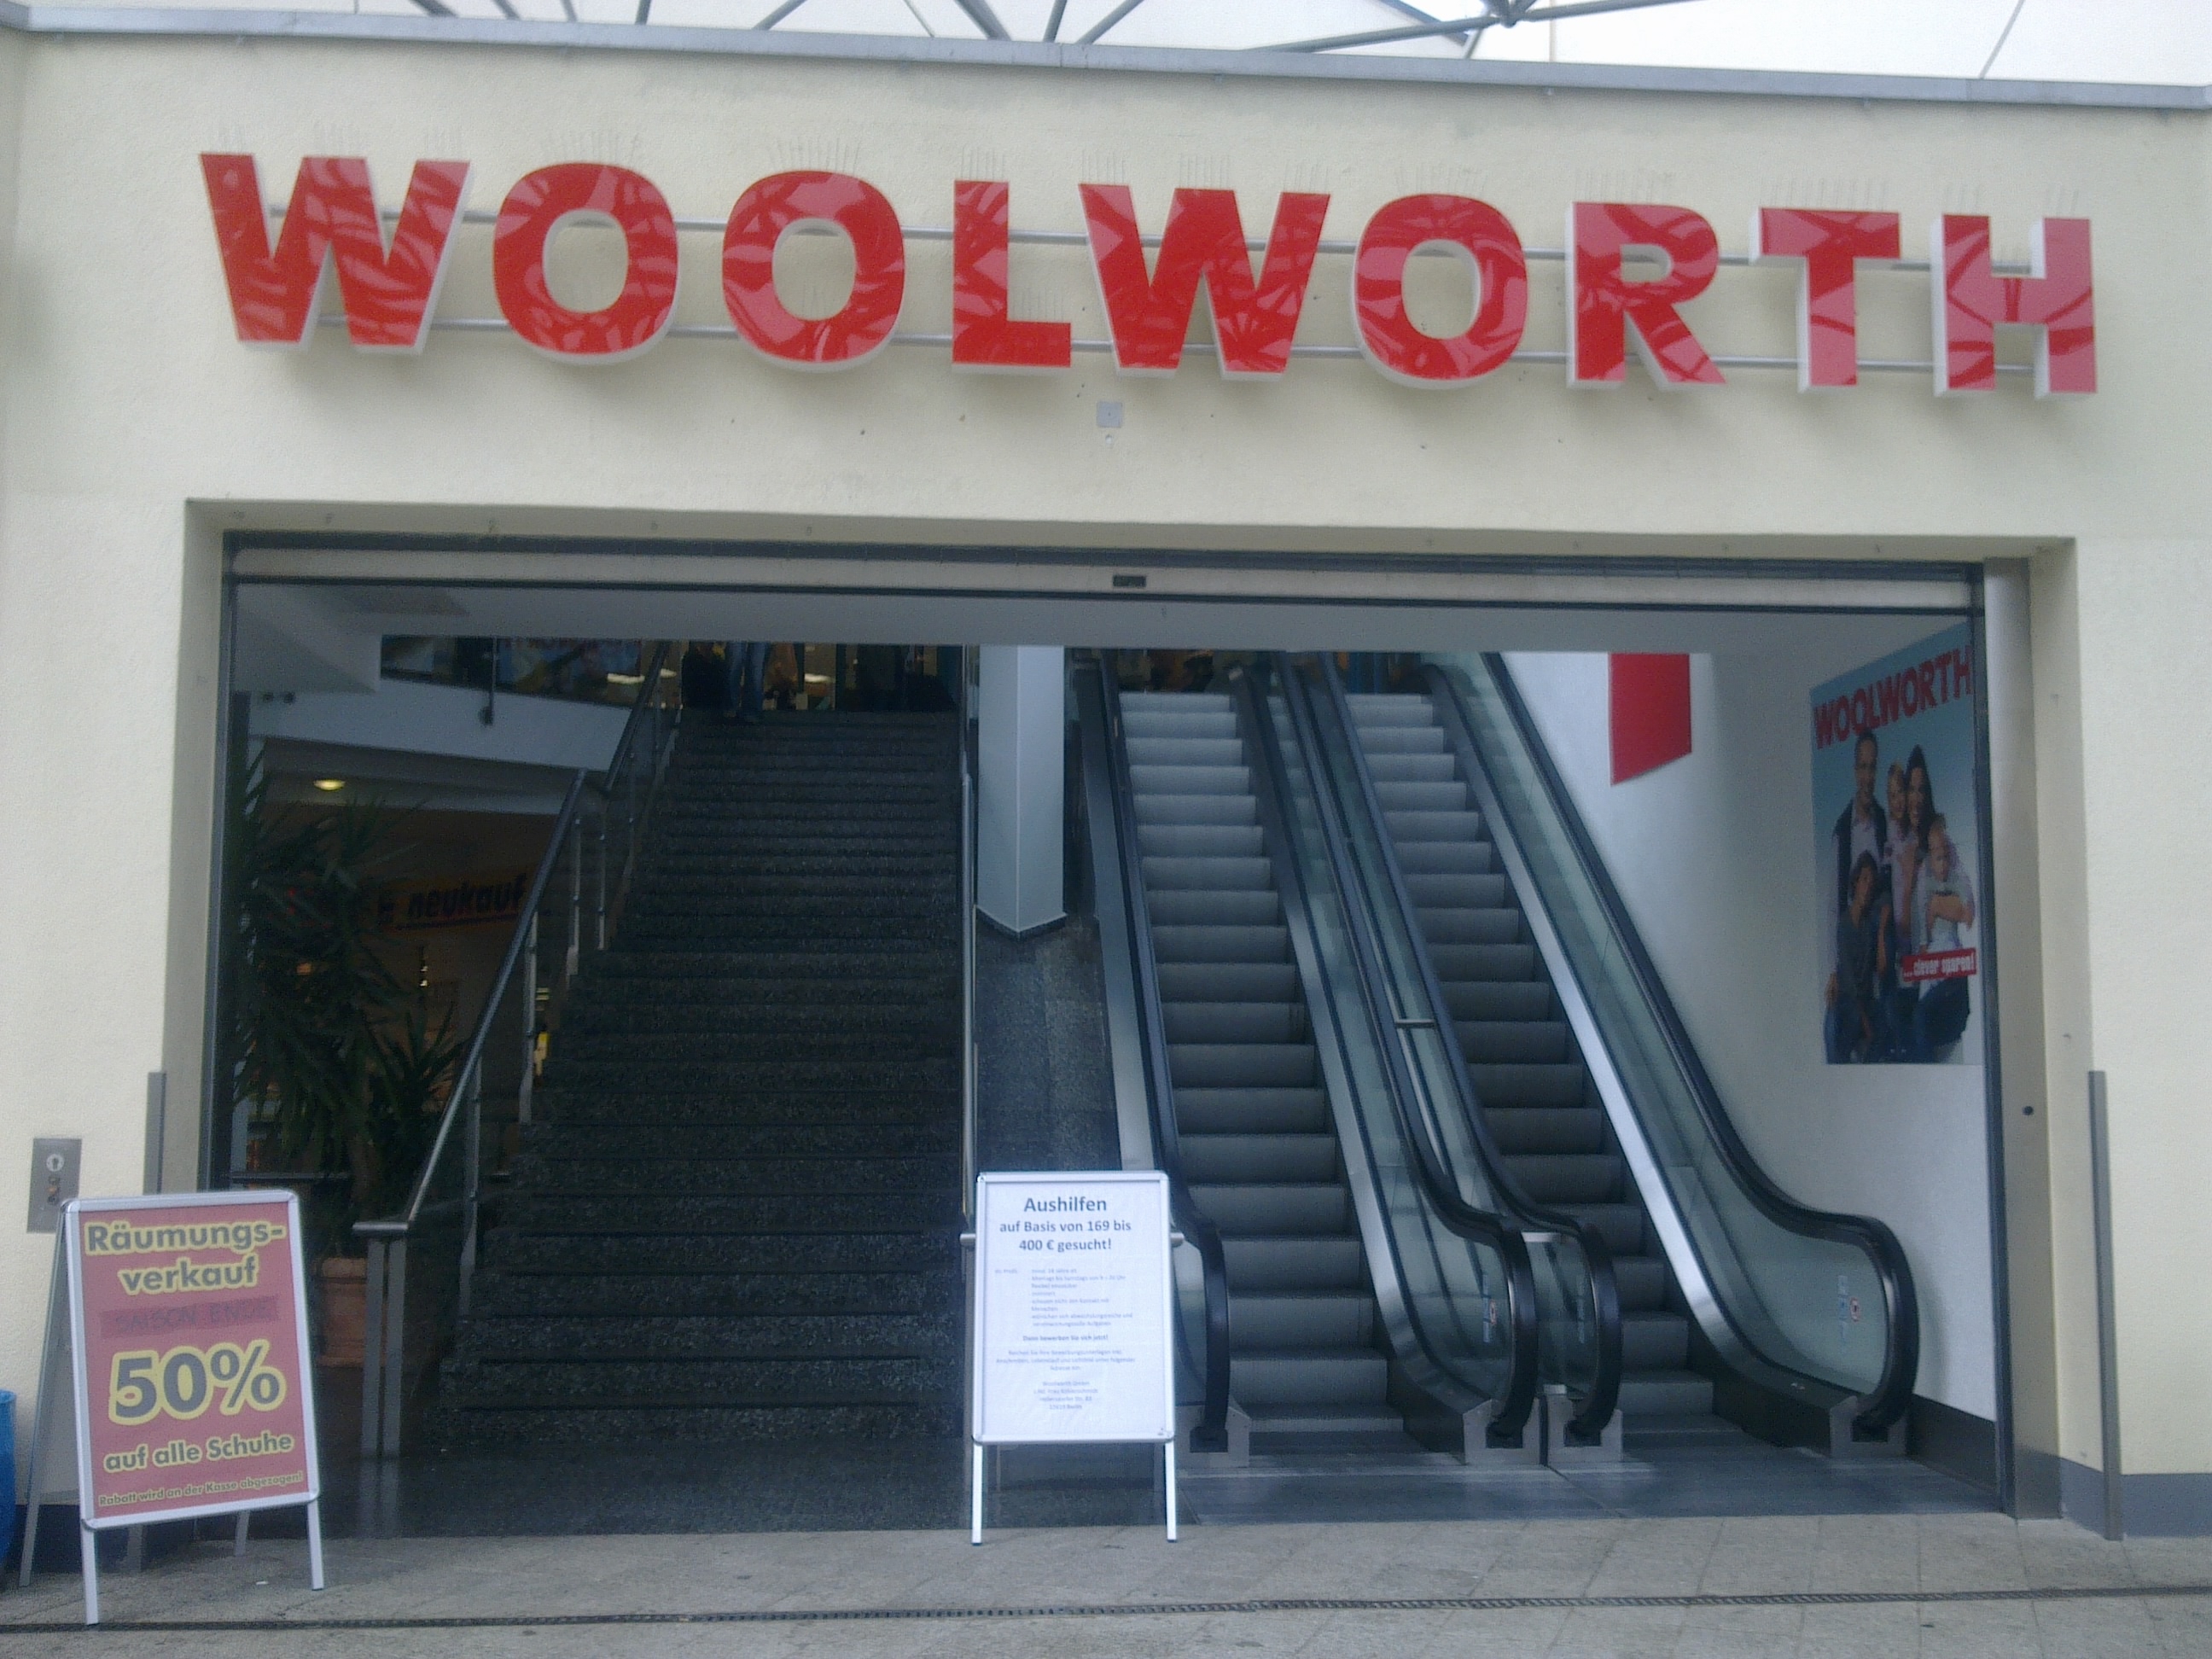 Woolworth, Hellersdorfer Straße 83 in Berlin